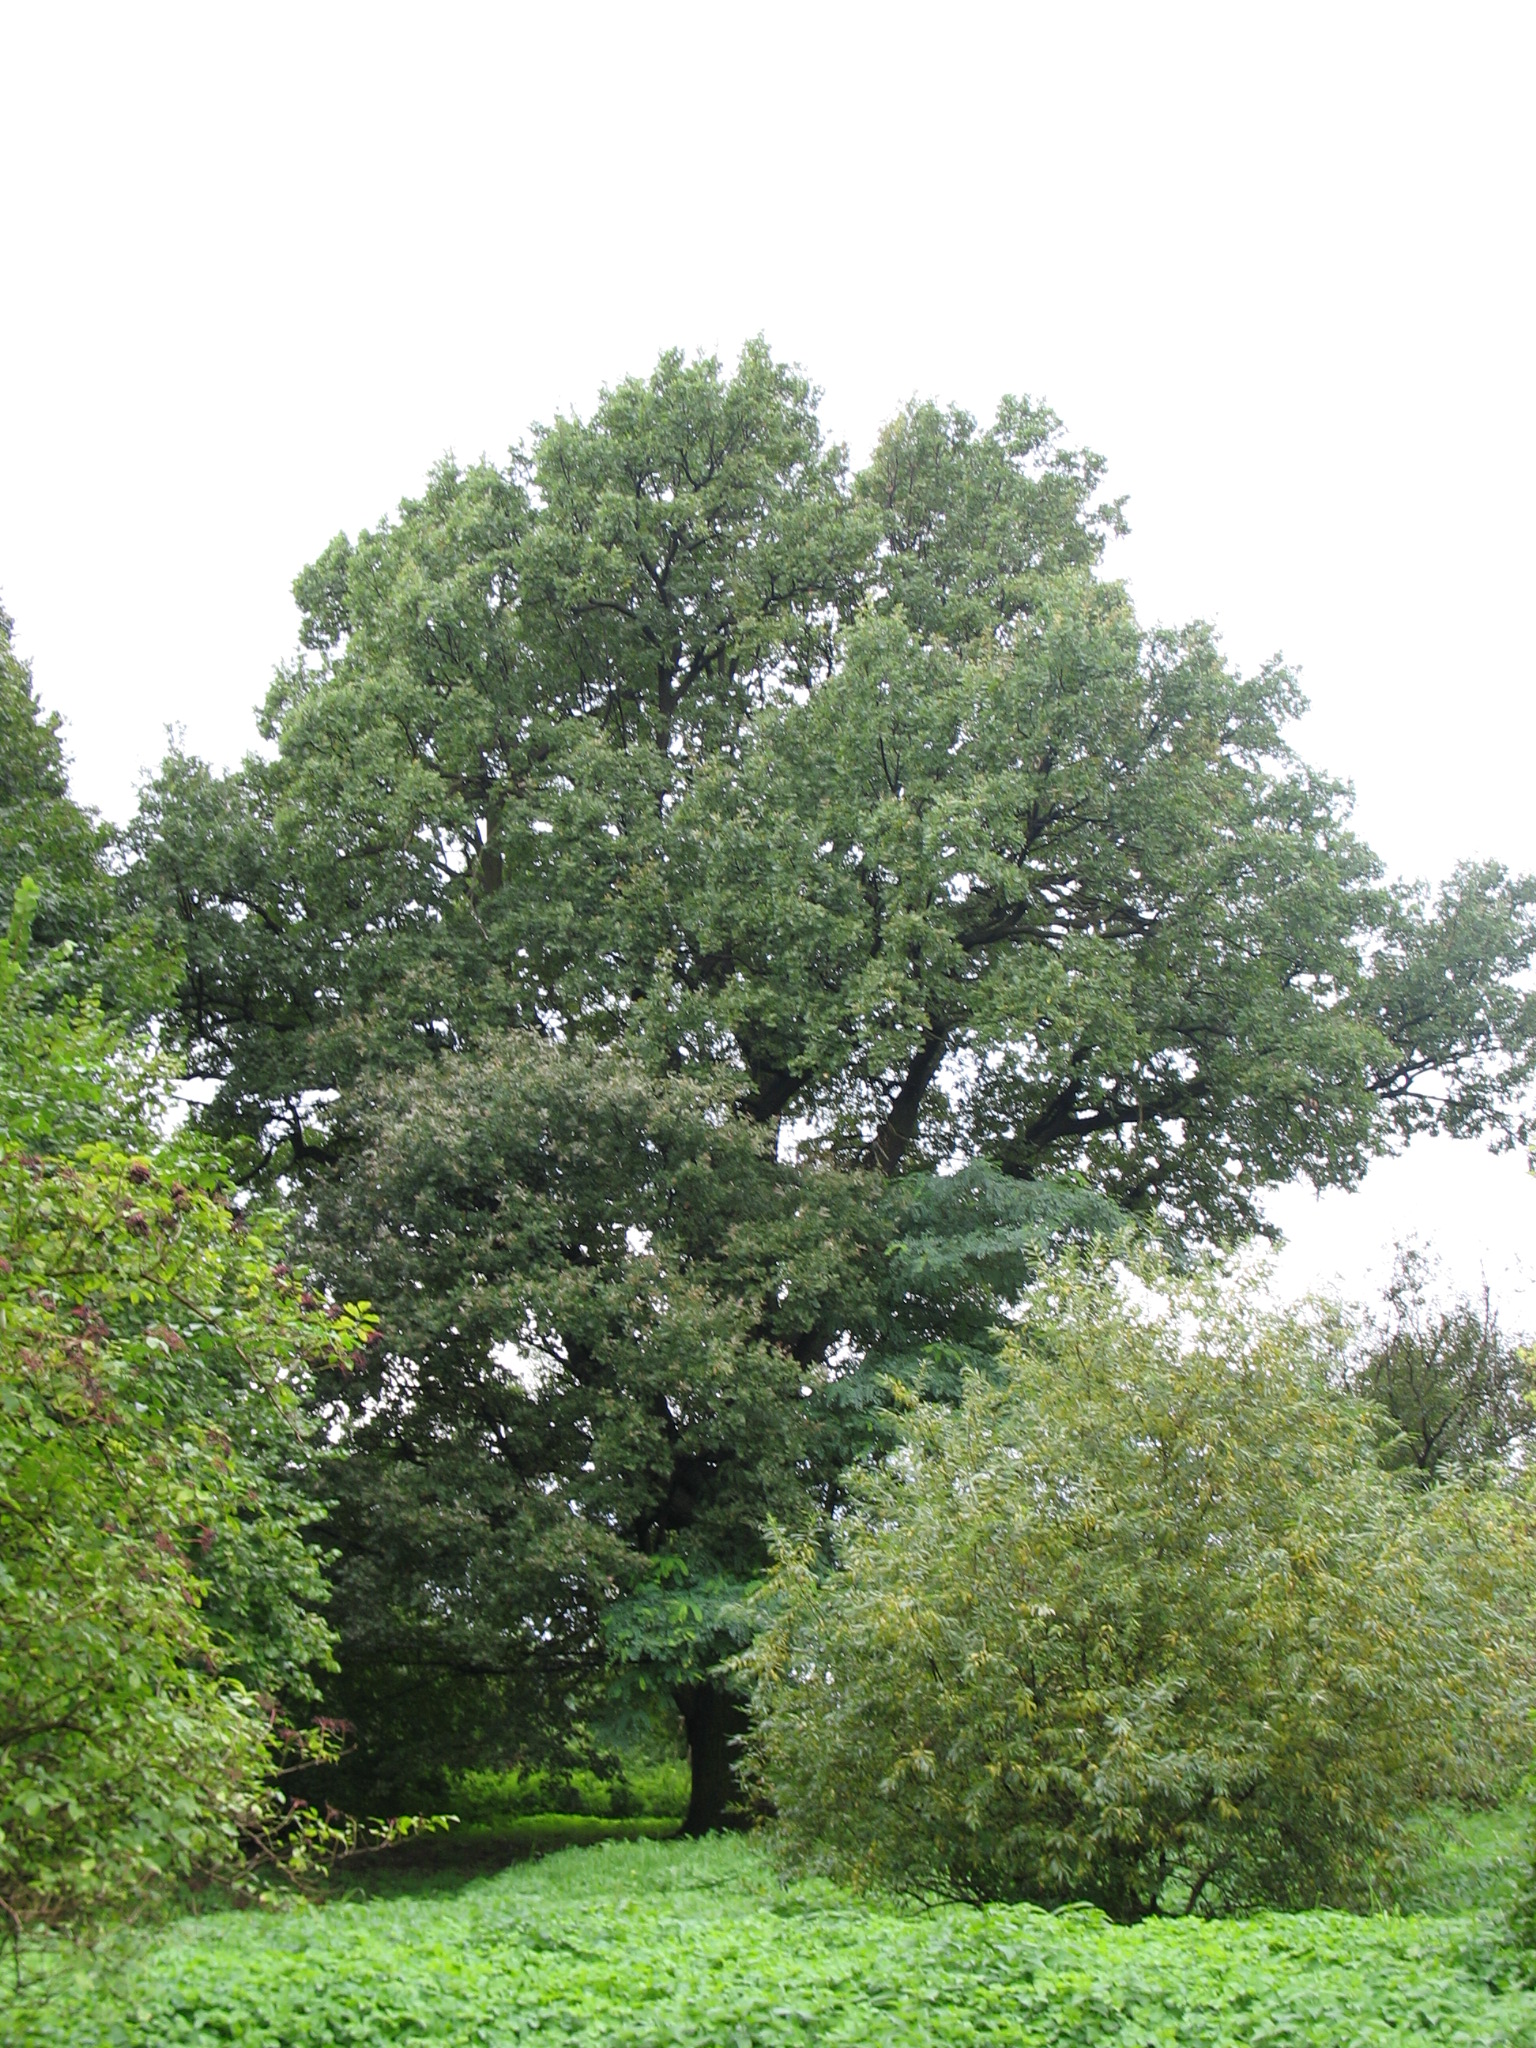 Dąb szypułkowy (Quercus robur) rosnący w Czernicy, na terenie parku przy Ośrodku Kultury "Zameczek", charakteryzujący się ponad 4 metrowym obwodem na wysokości 130 cm.